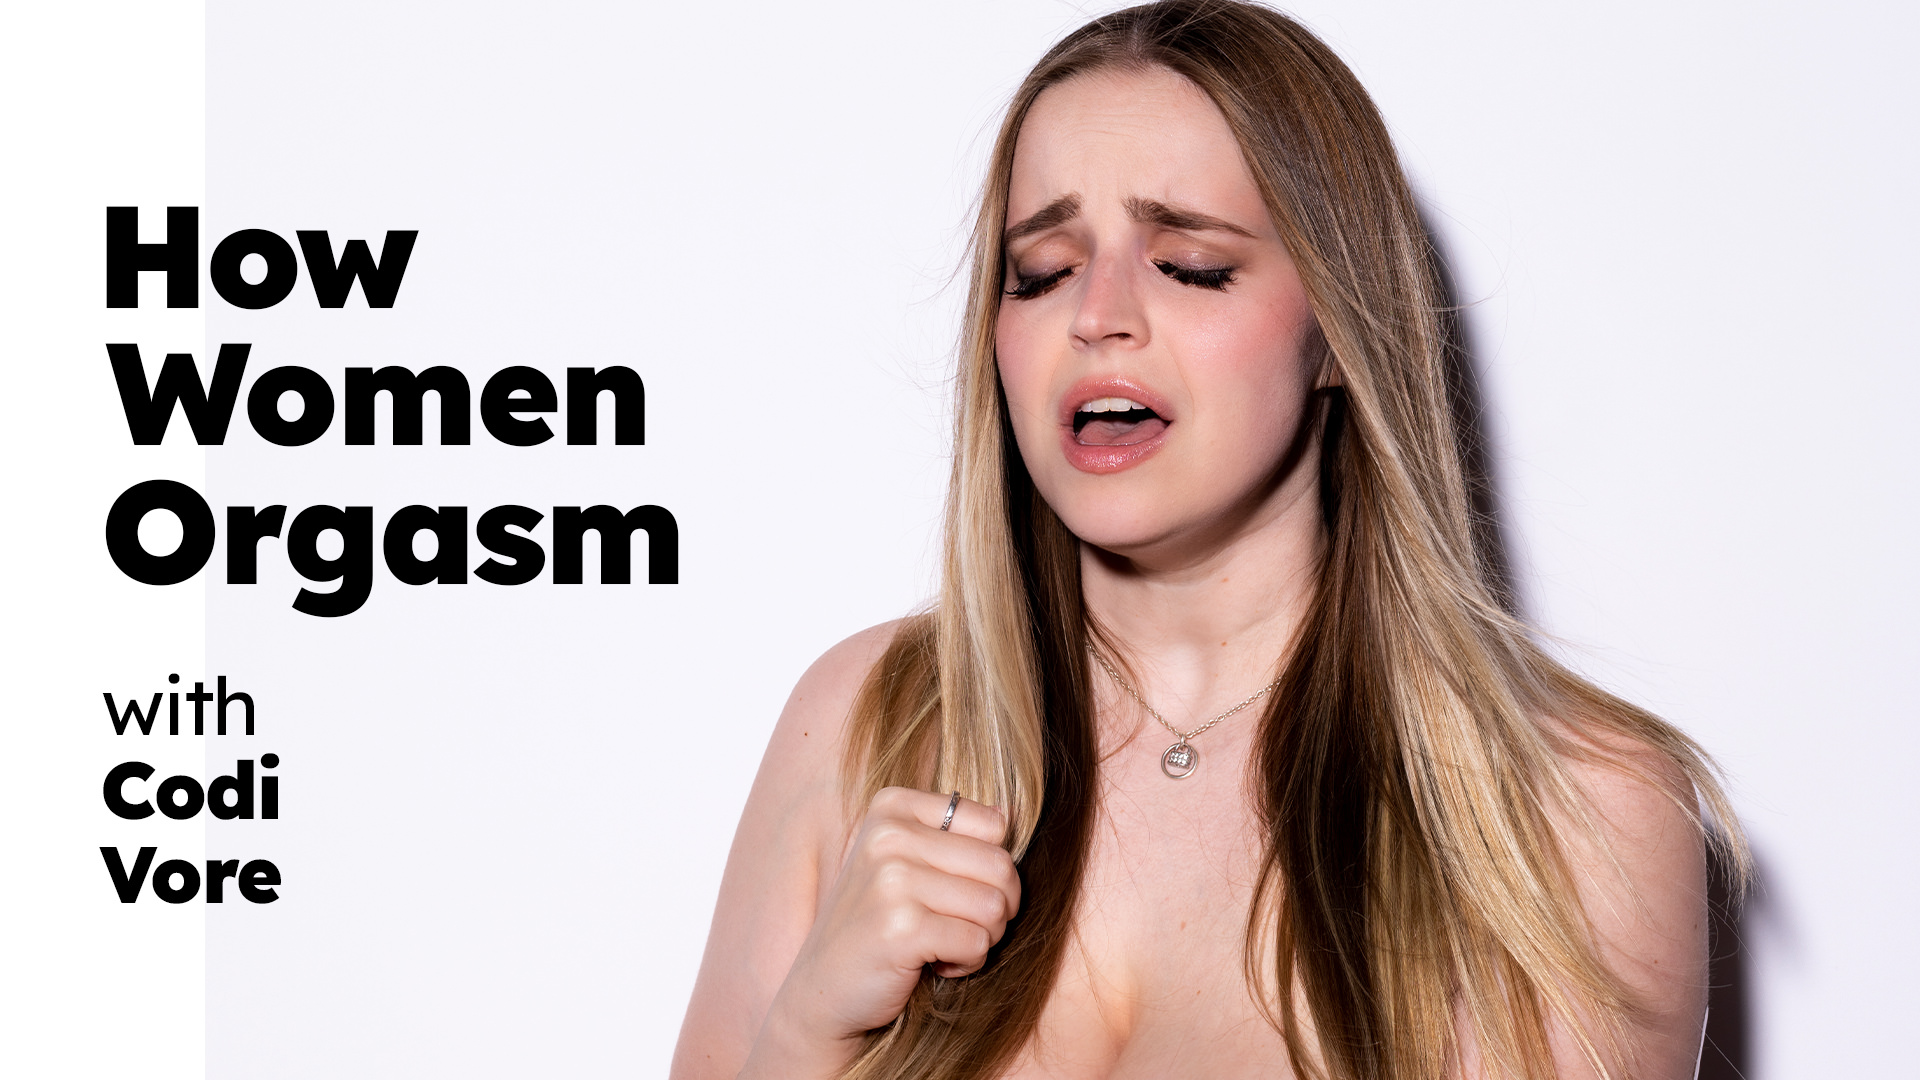 Codi Vore “How Women Orgasm – Codi Vore” HowWomenOrgasm